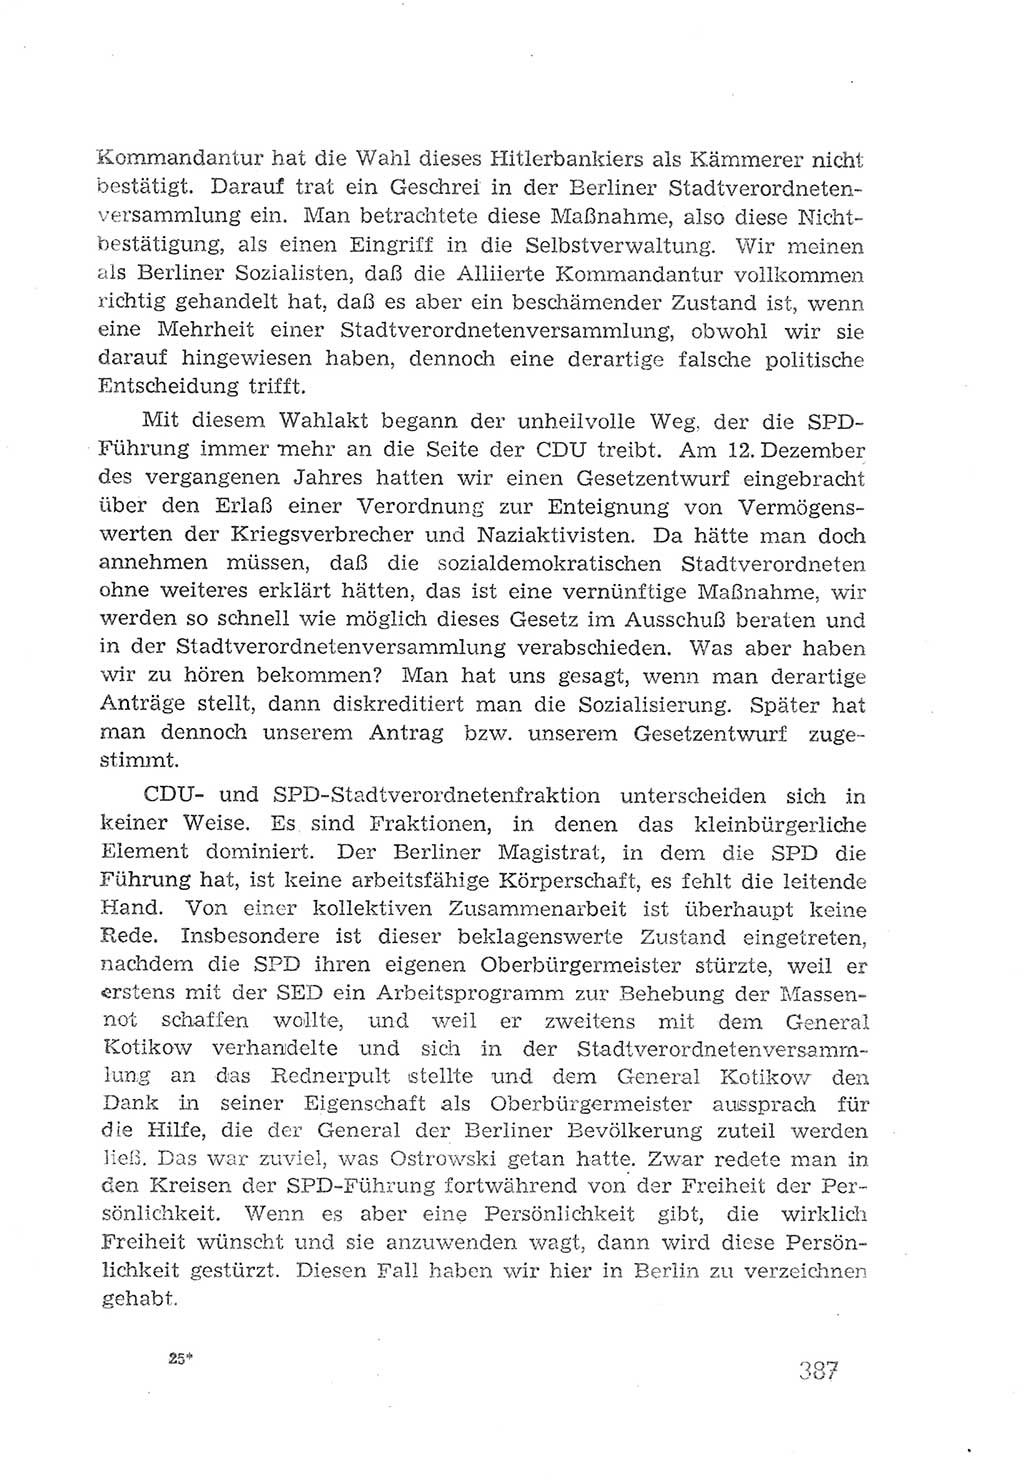 Protokoll der Verhandlungen des 2. Parteitages der Sozialistischen Einheitspartei Deutschlands (SED) [Sowjetische Besatzungszone (SBZ) Deutschlands] 1947, Seite 387 (Prot. Verh. 2. PT SED SBZ Dtl. 1947, S. 387)